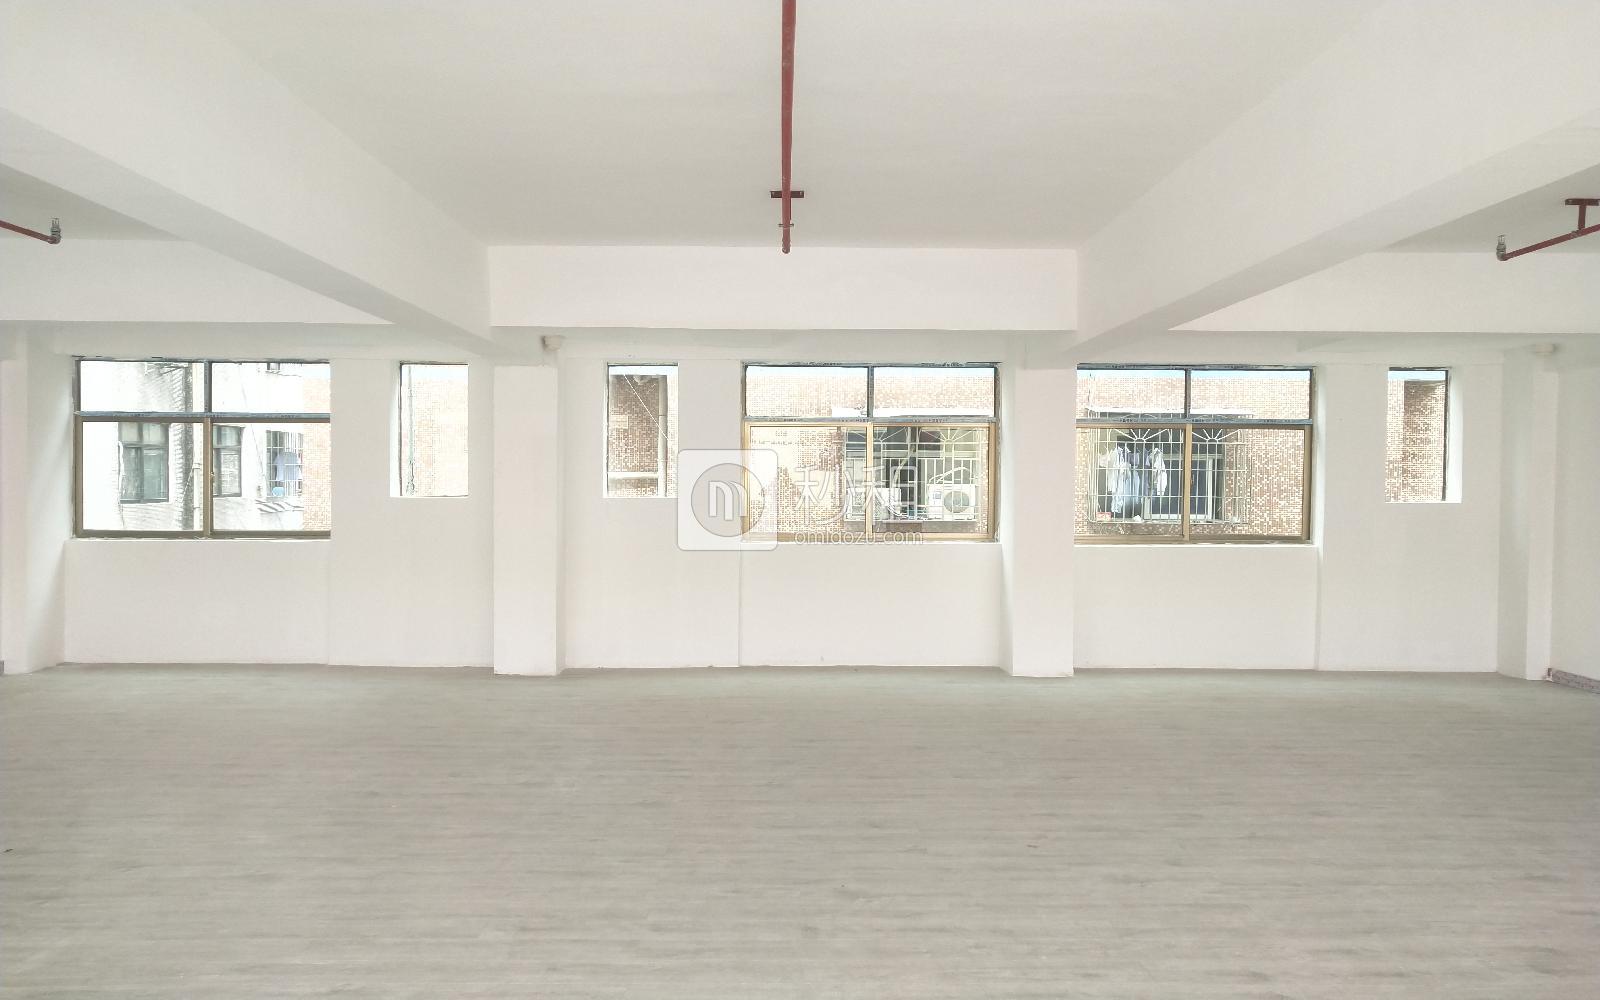 101文化创意园写字楼出租428平米简装办公室50元/m².月